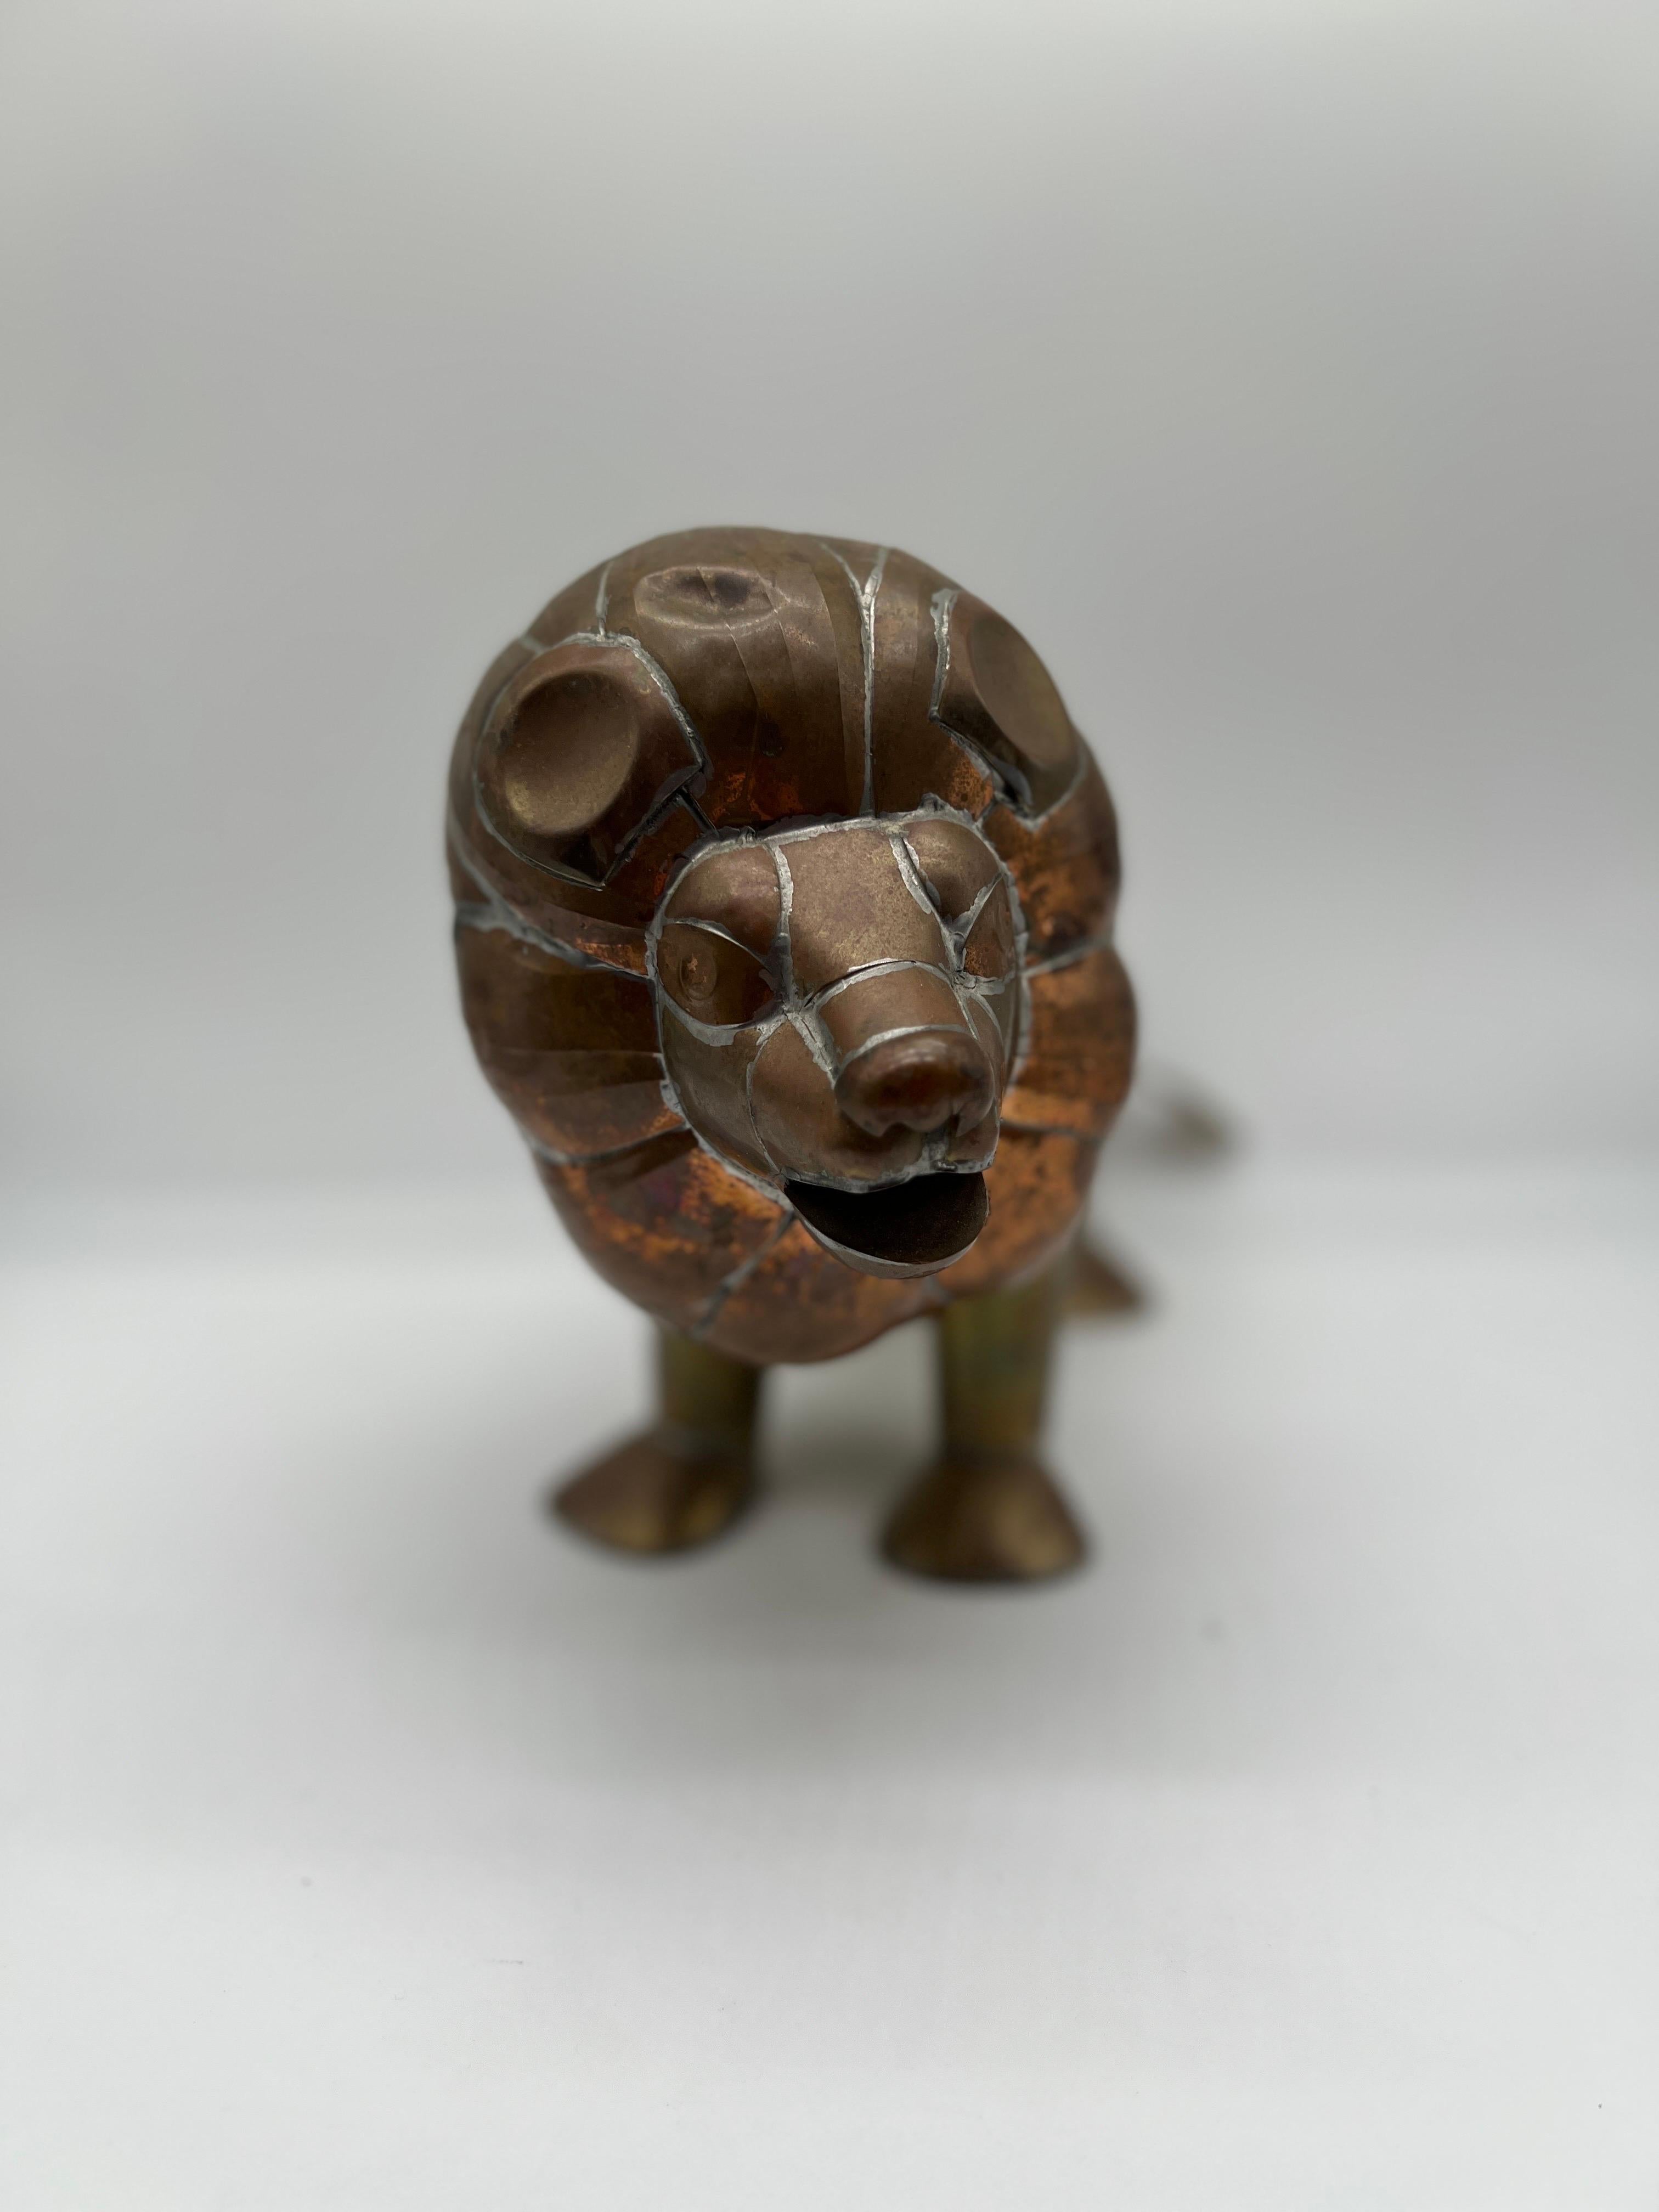 Attribué à : Sergio Bustamante (Mexicain, né en 1949), vers 1970. 
Le lion présente le travail unique pour lequel Bustamante est connu, construit en cuivre et en laiton traditionnels. La queue est amovible et présente un petit point de soudure en